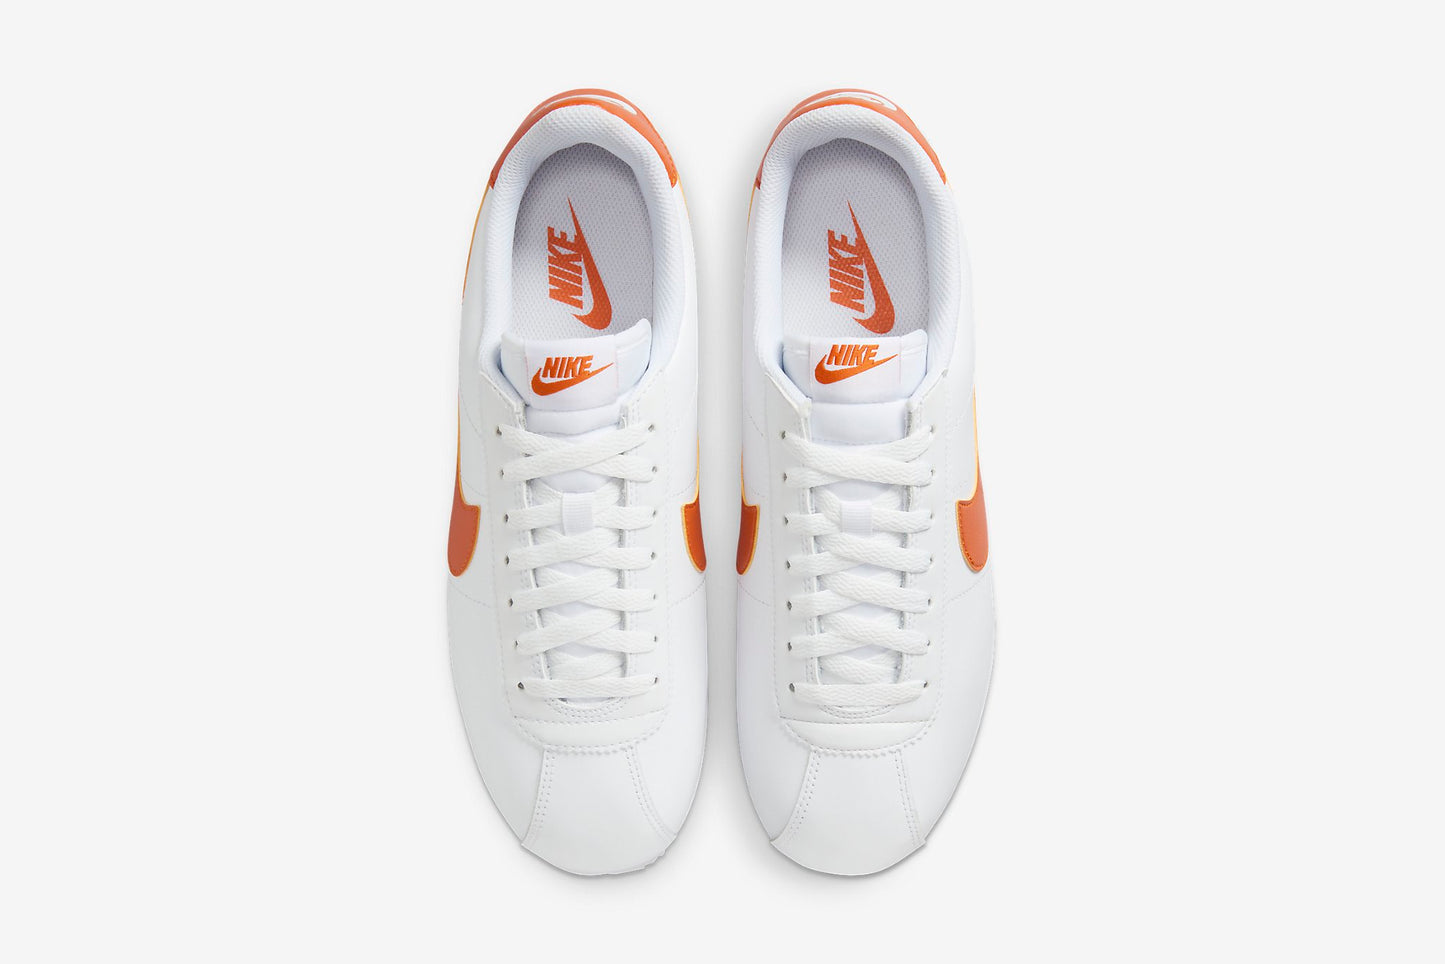 Nike "Cortez" M - White / Campfire Orange